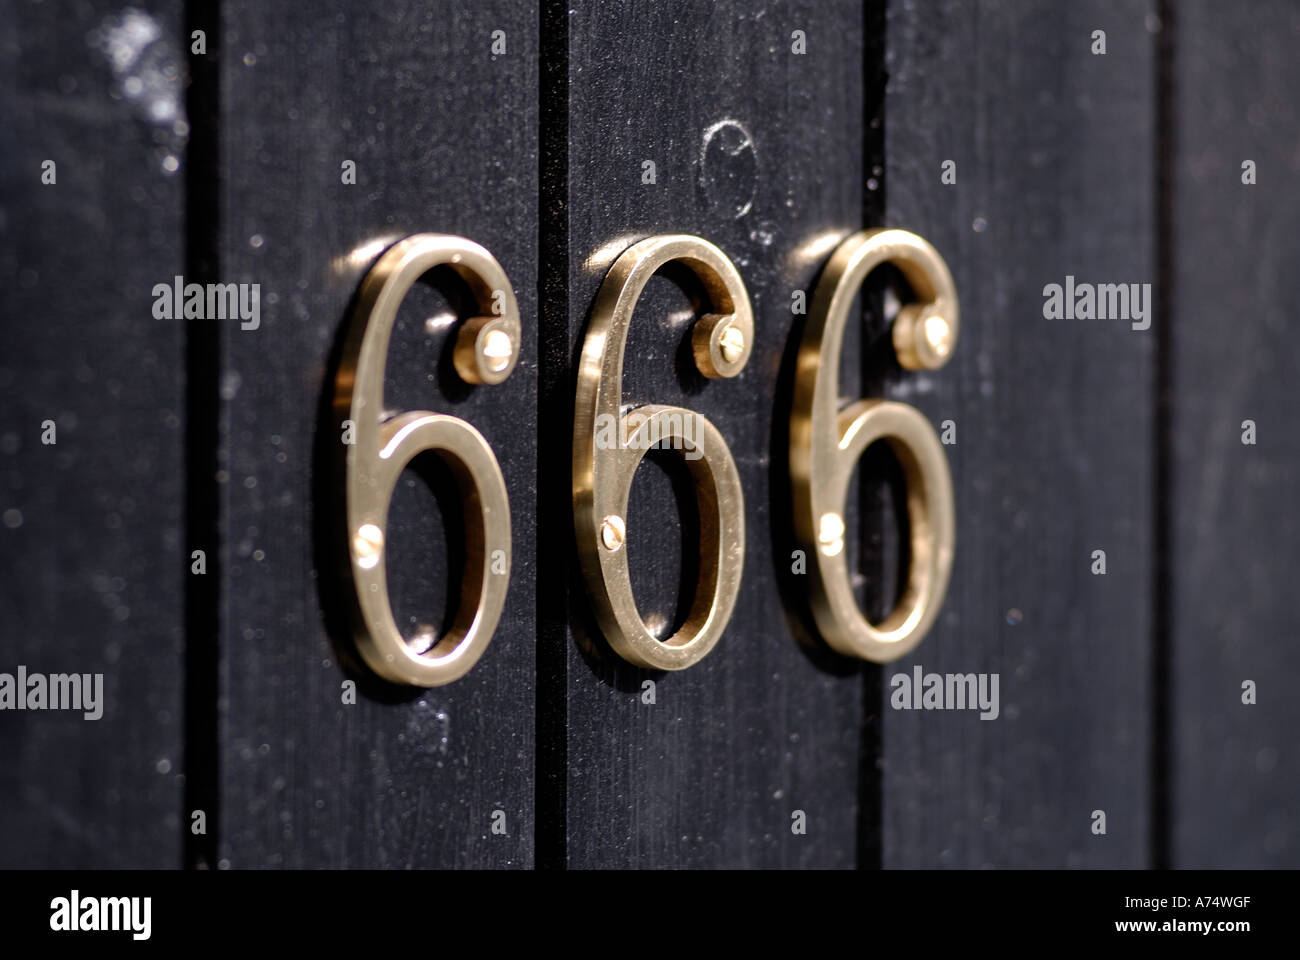 Brass door number 666 on a black wooden door Stock Photo